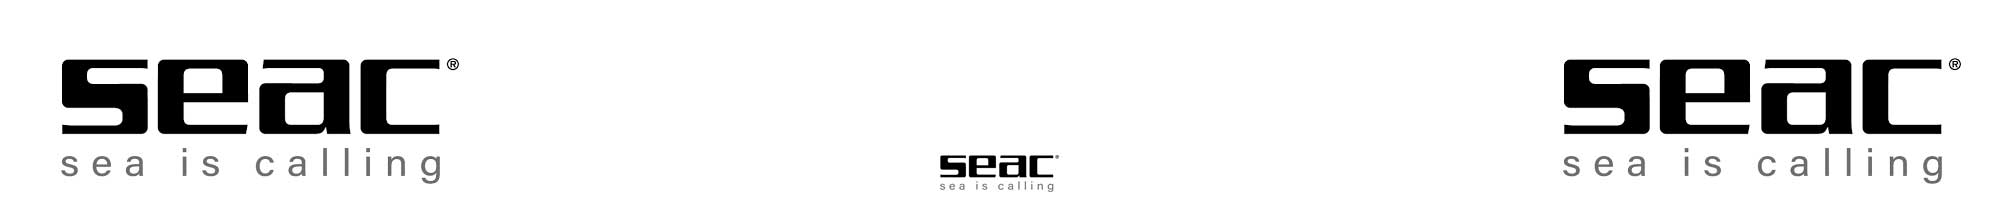 Seac Sub